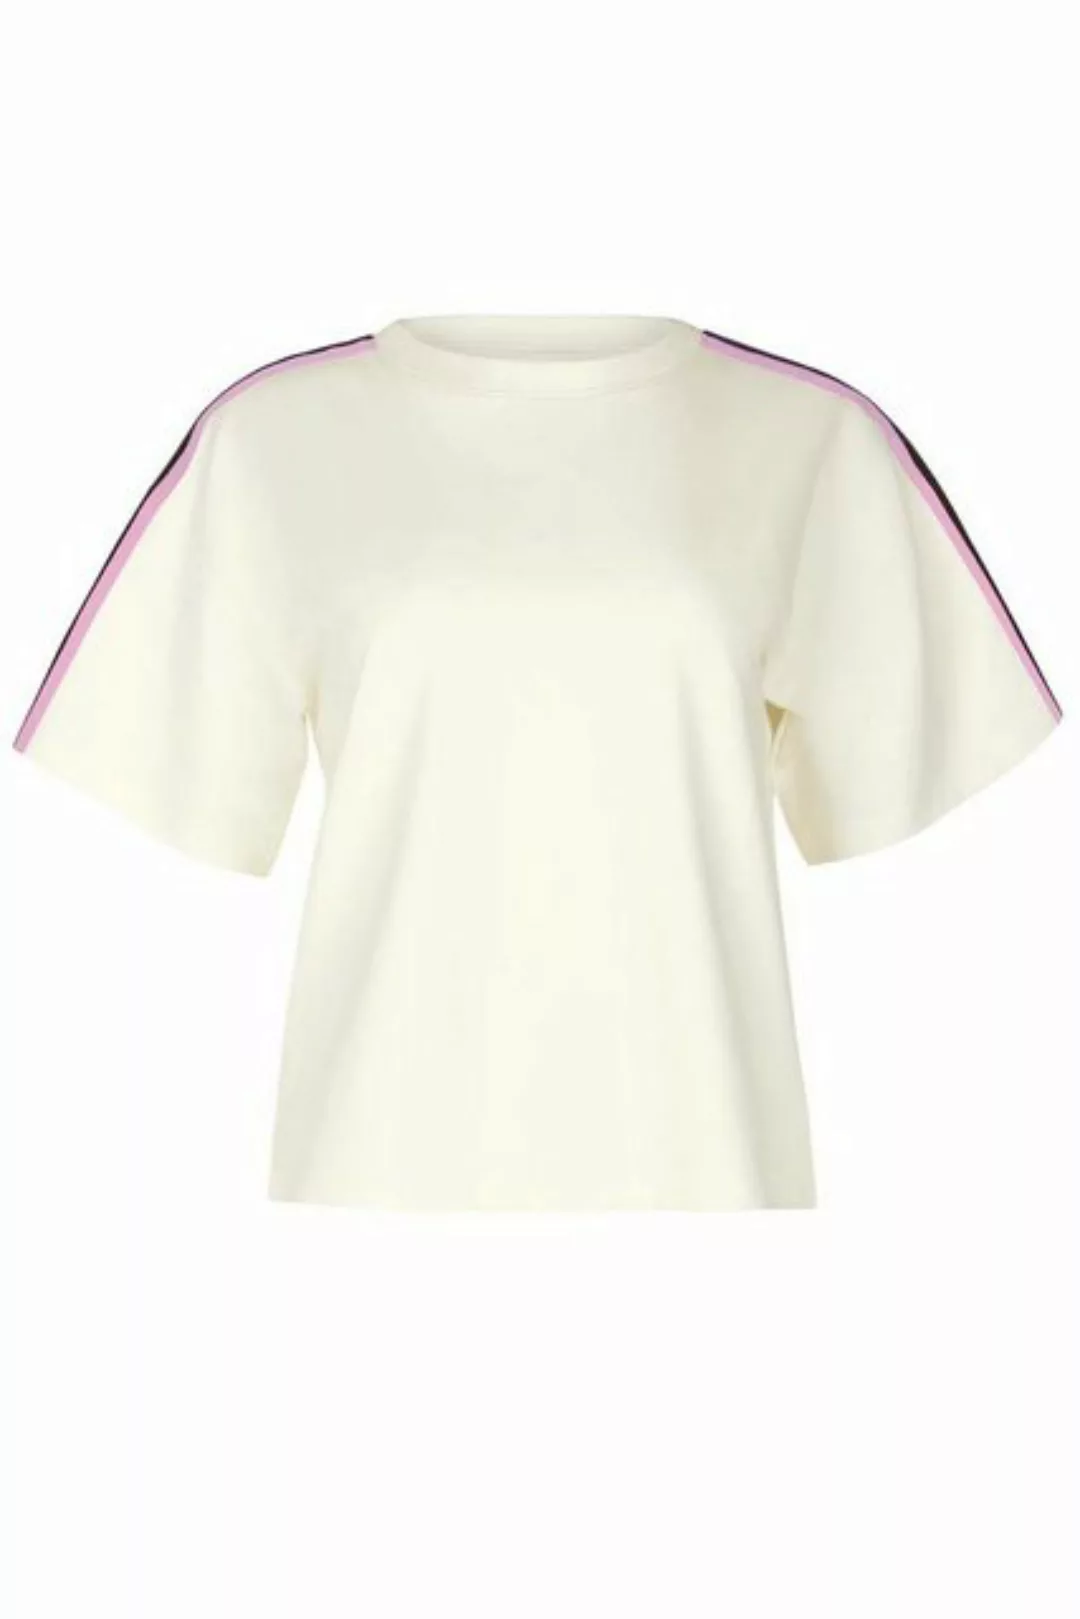 Cheek Shirt kurzarm Retromania 42 elfenbein günstig online kaufen